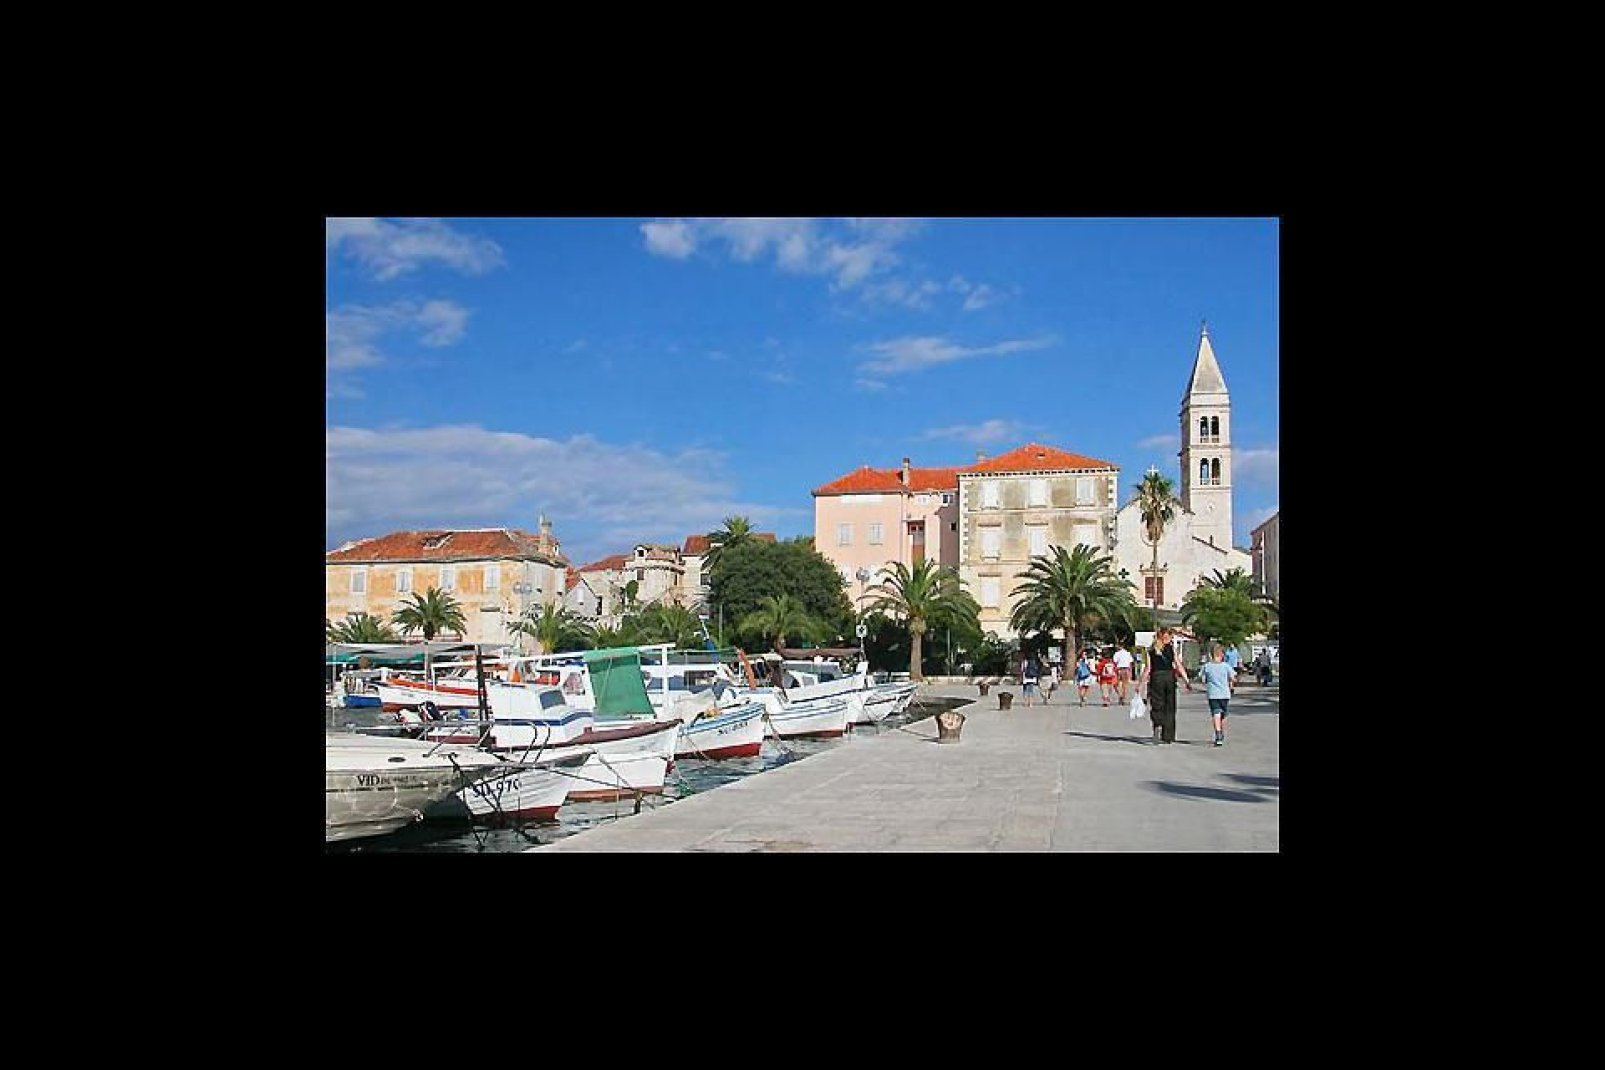 Touristes se promenant dans le port de plaisance de Split, la plus grande ville du sud de la Croatie.